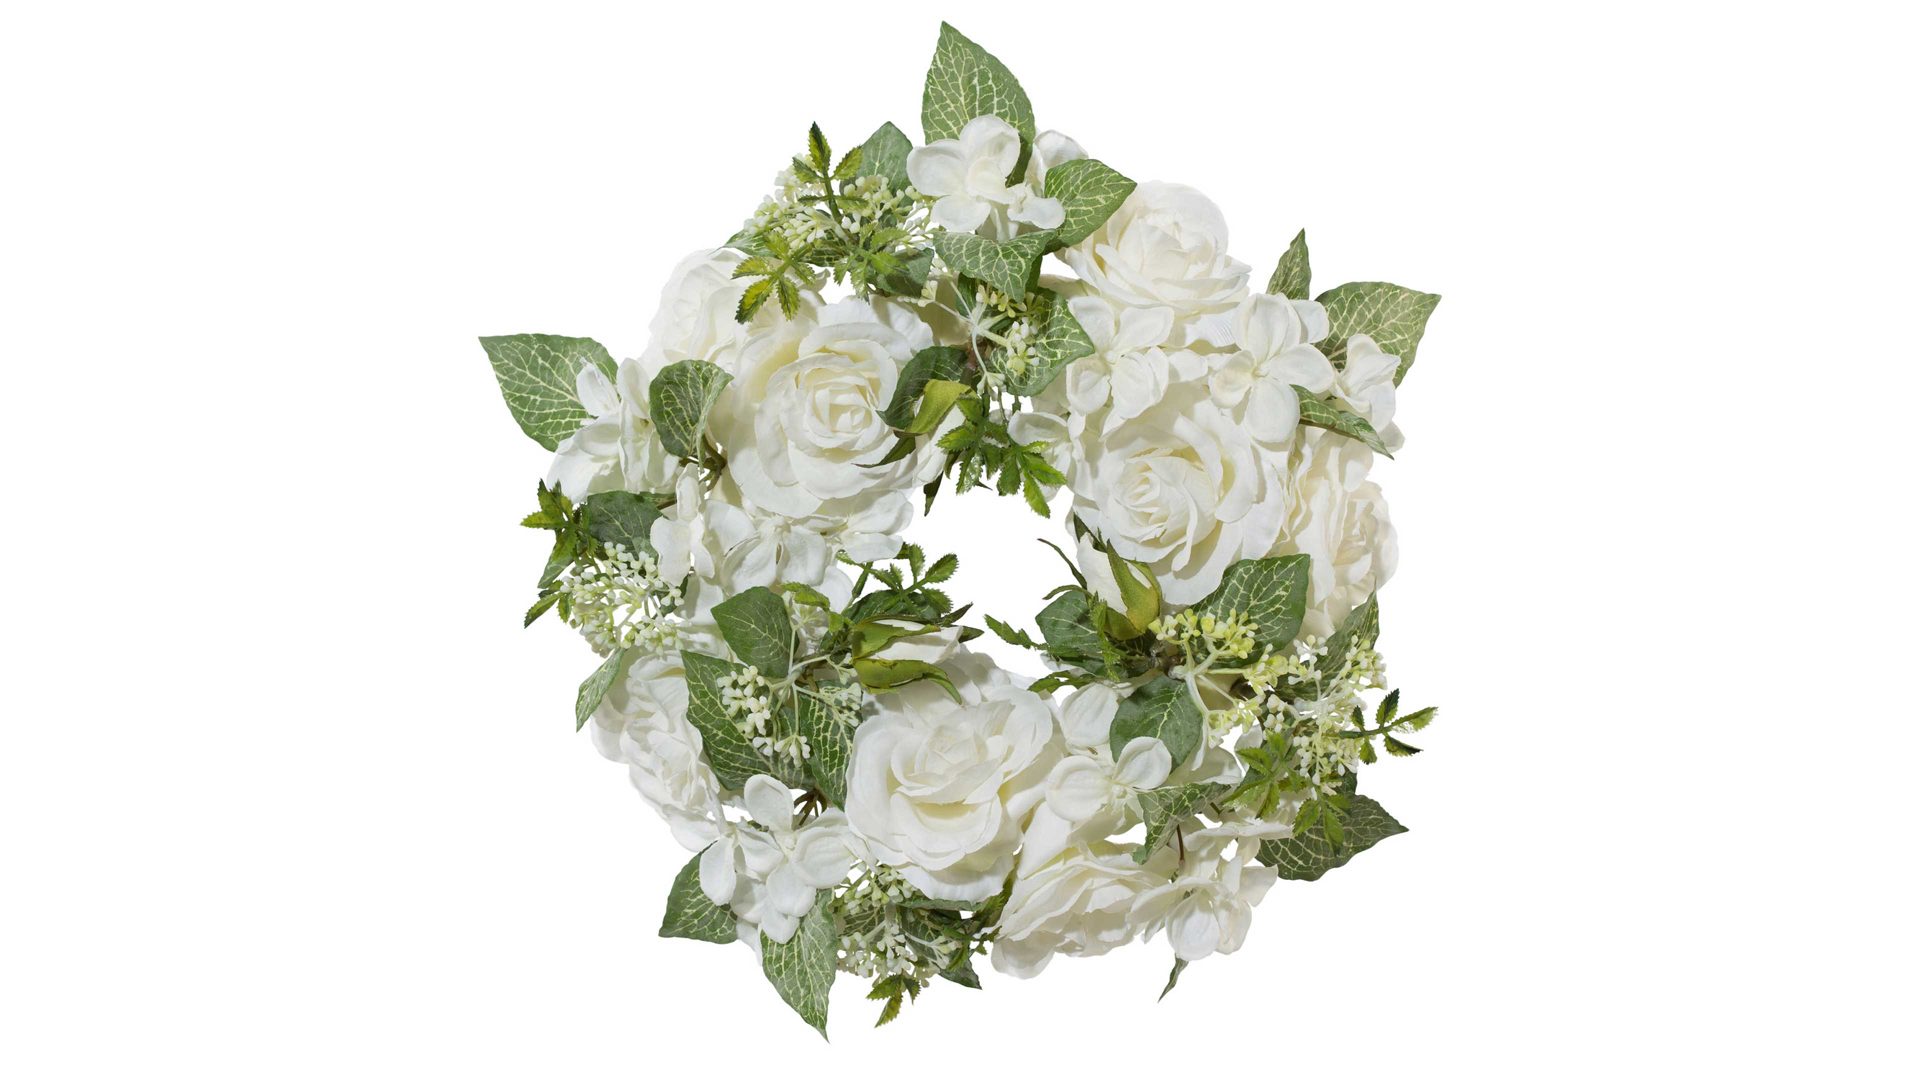 Kranz Gasper gmbh aus Stoff in Weiß Rosenkranz weiße Textilblüten – Durchmesser ca. 33 cm